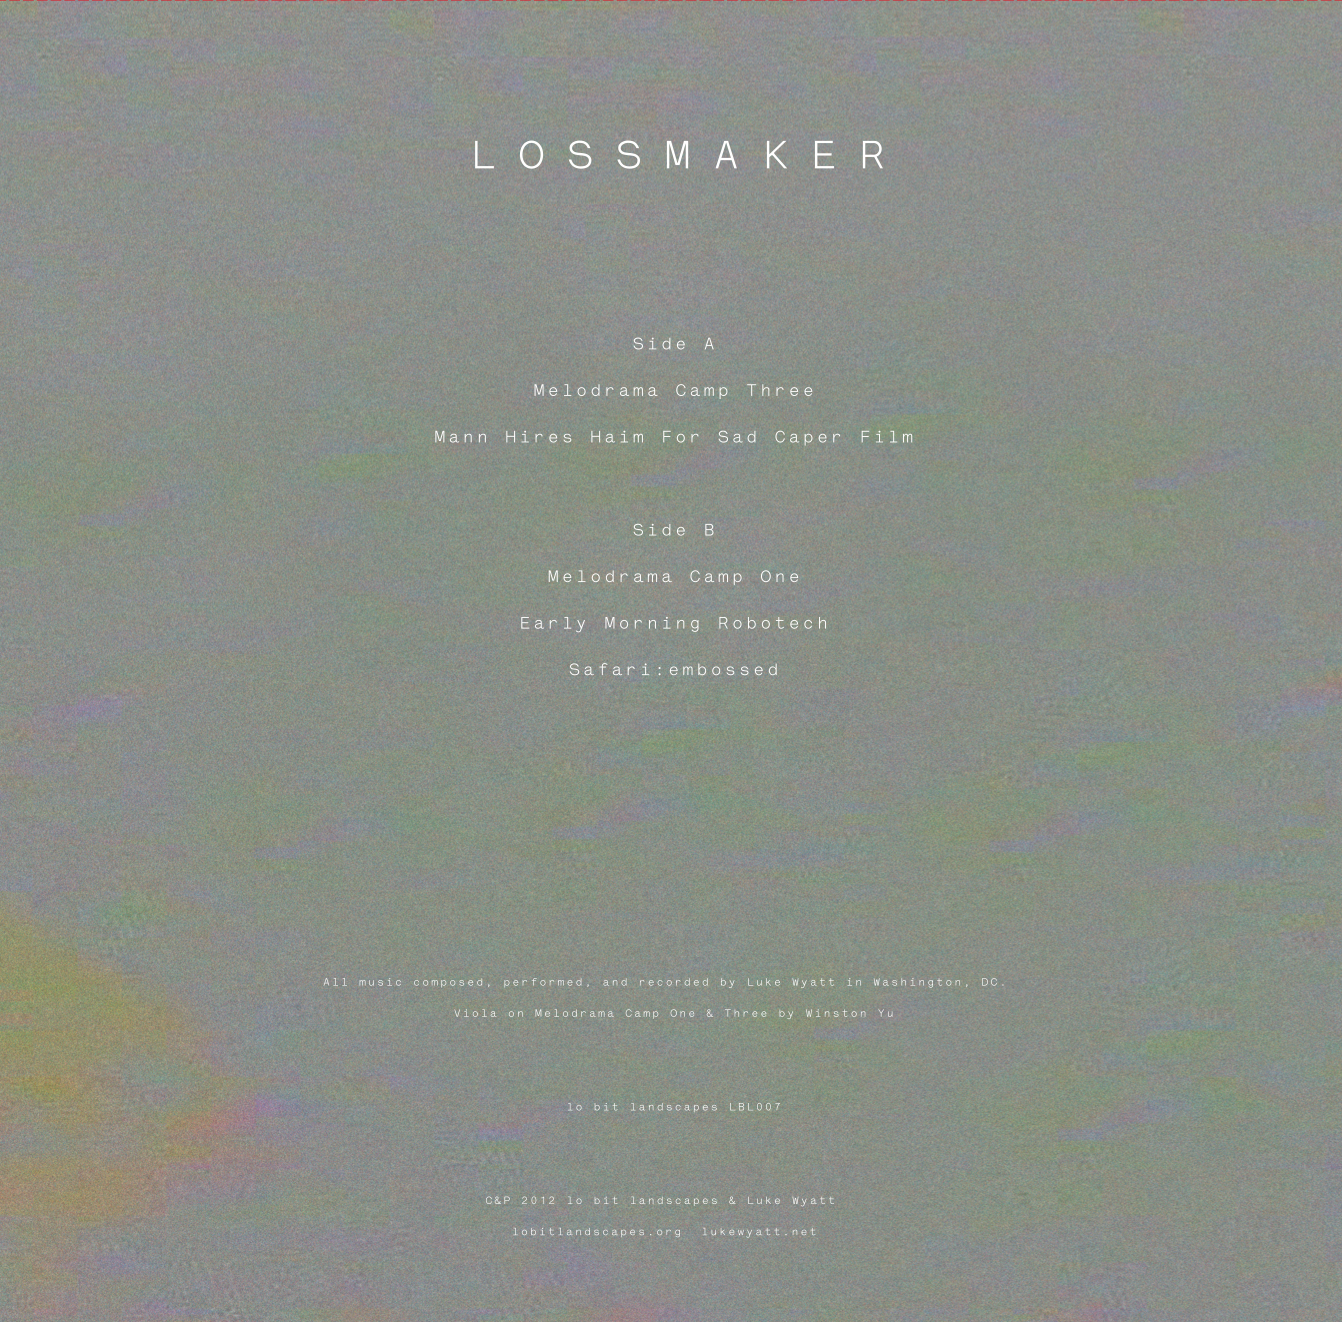 Lbl007 lossmaker lossmaker back